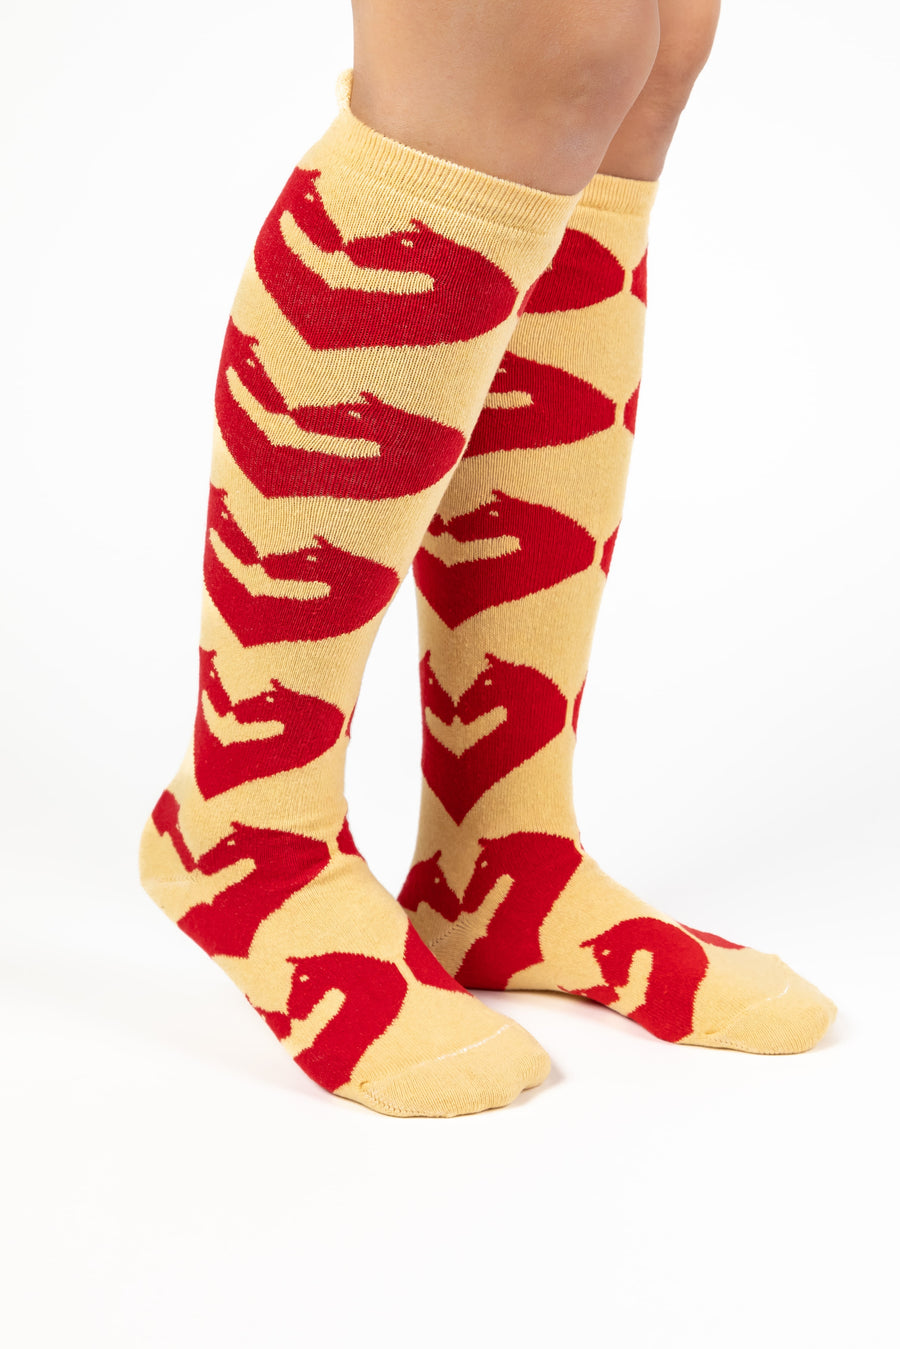 Cuore di Cavallo Women's 3-Sock Bundle